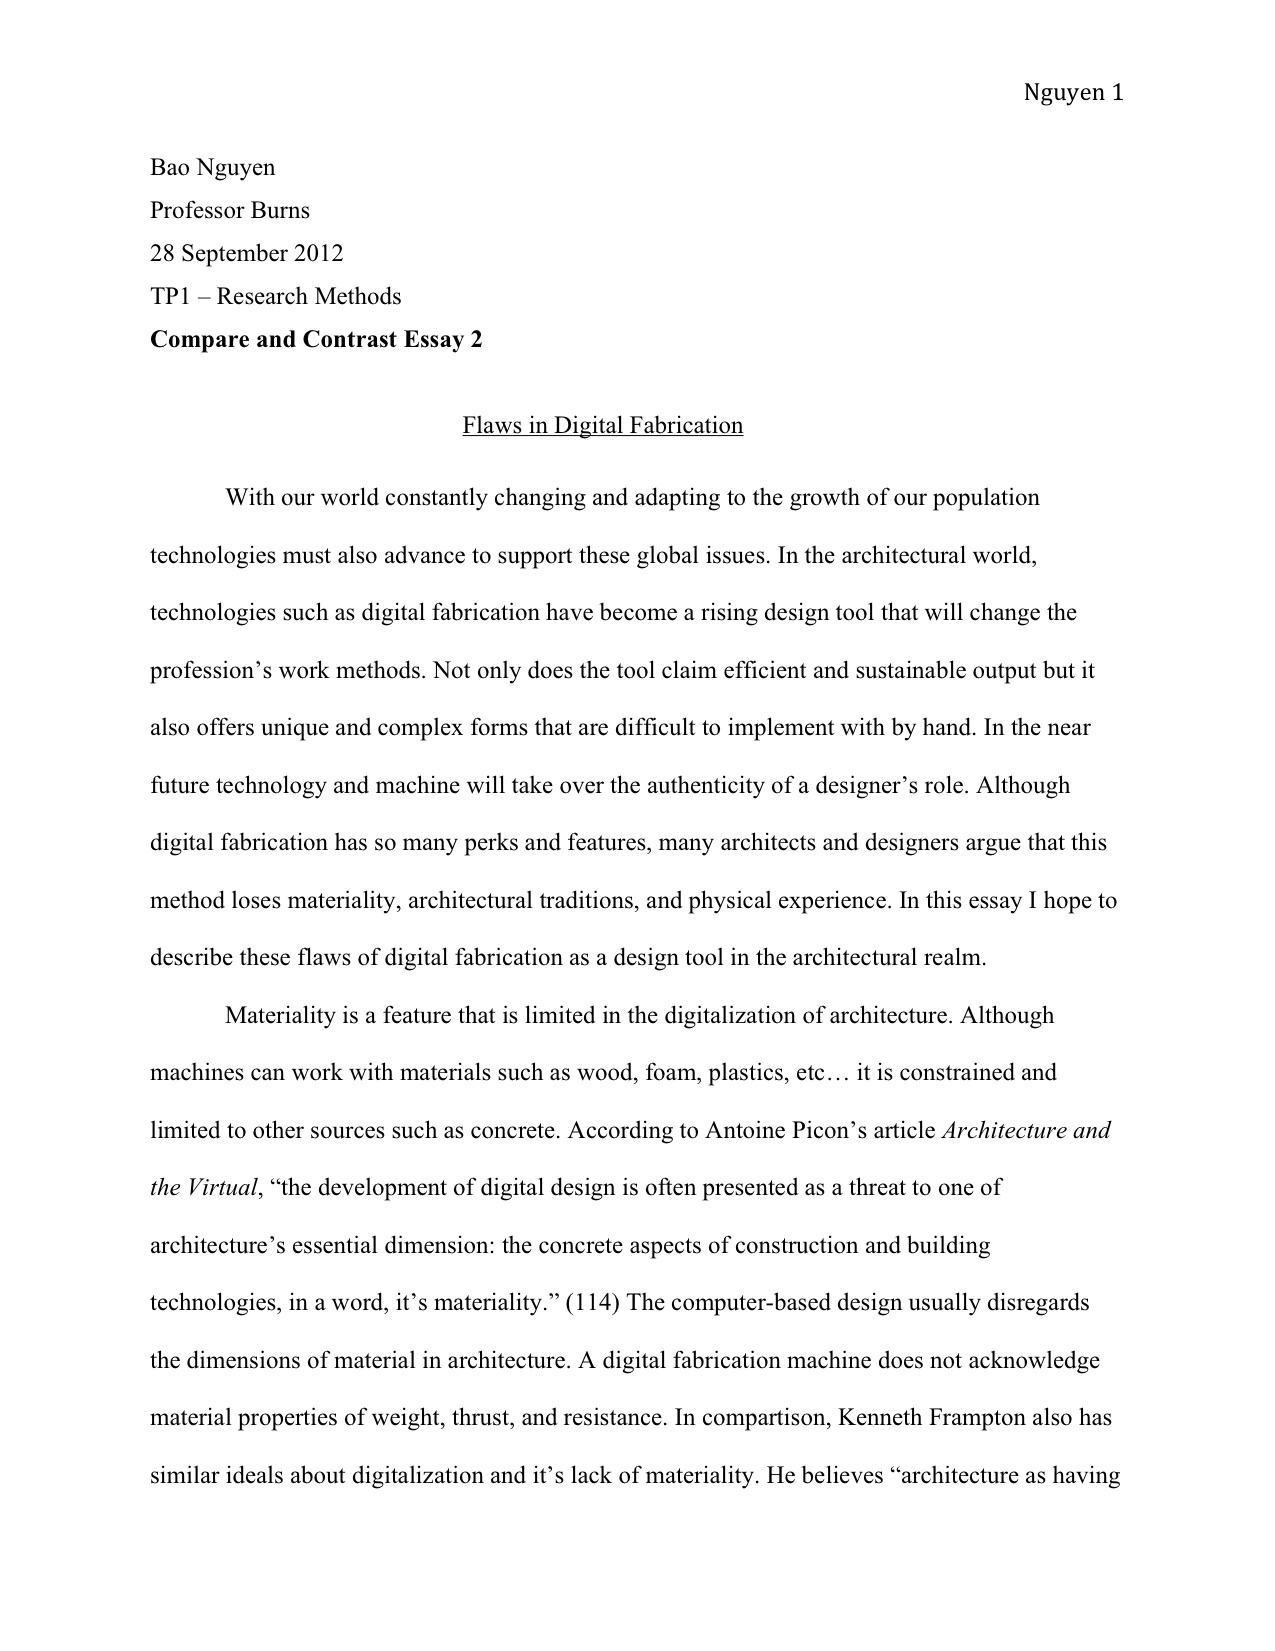 Persuasive essay thesis format